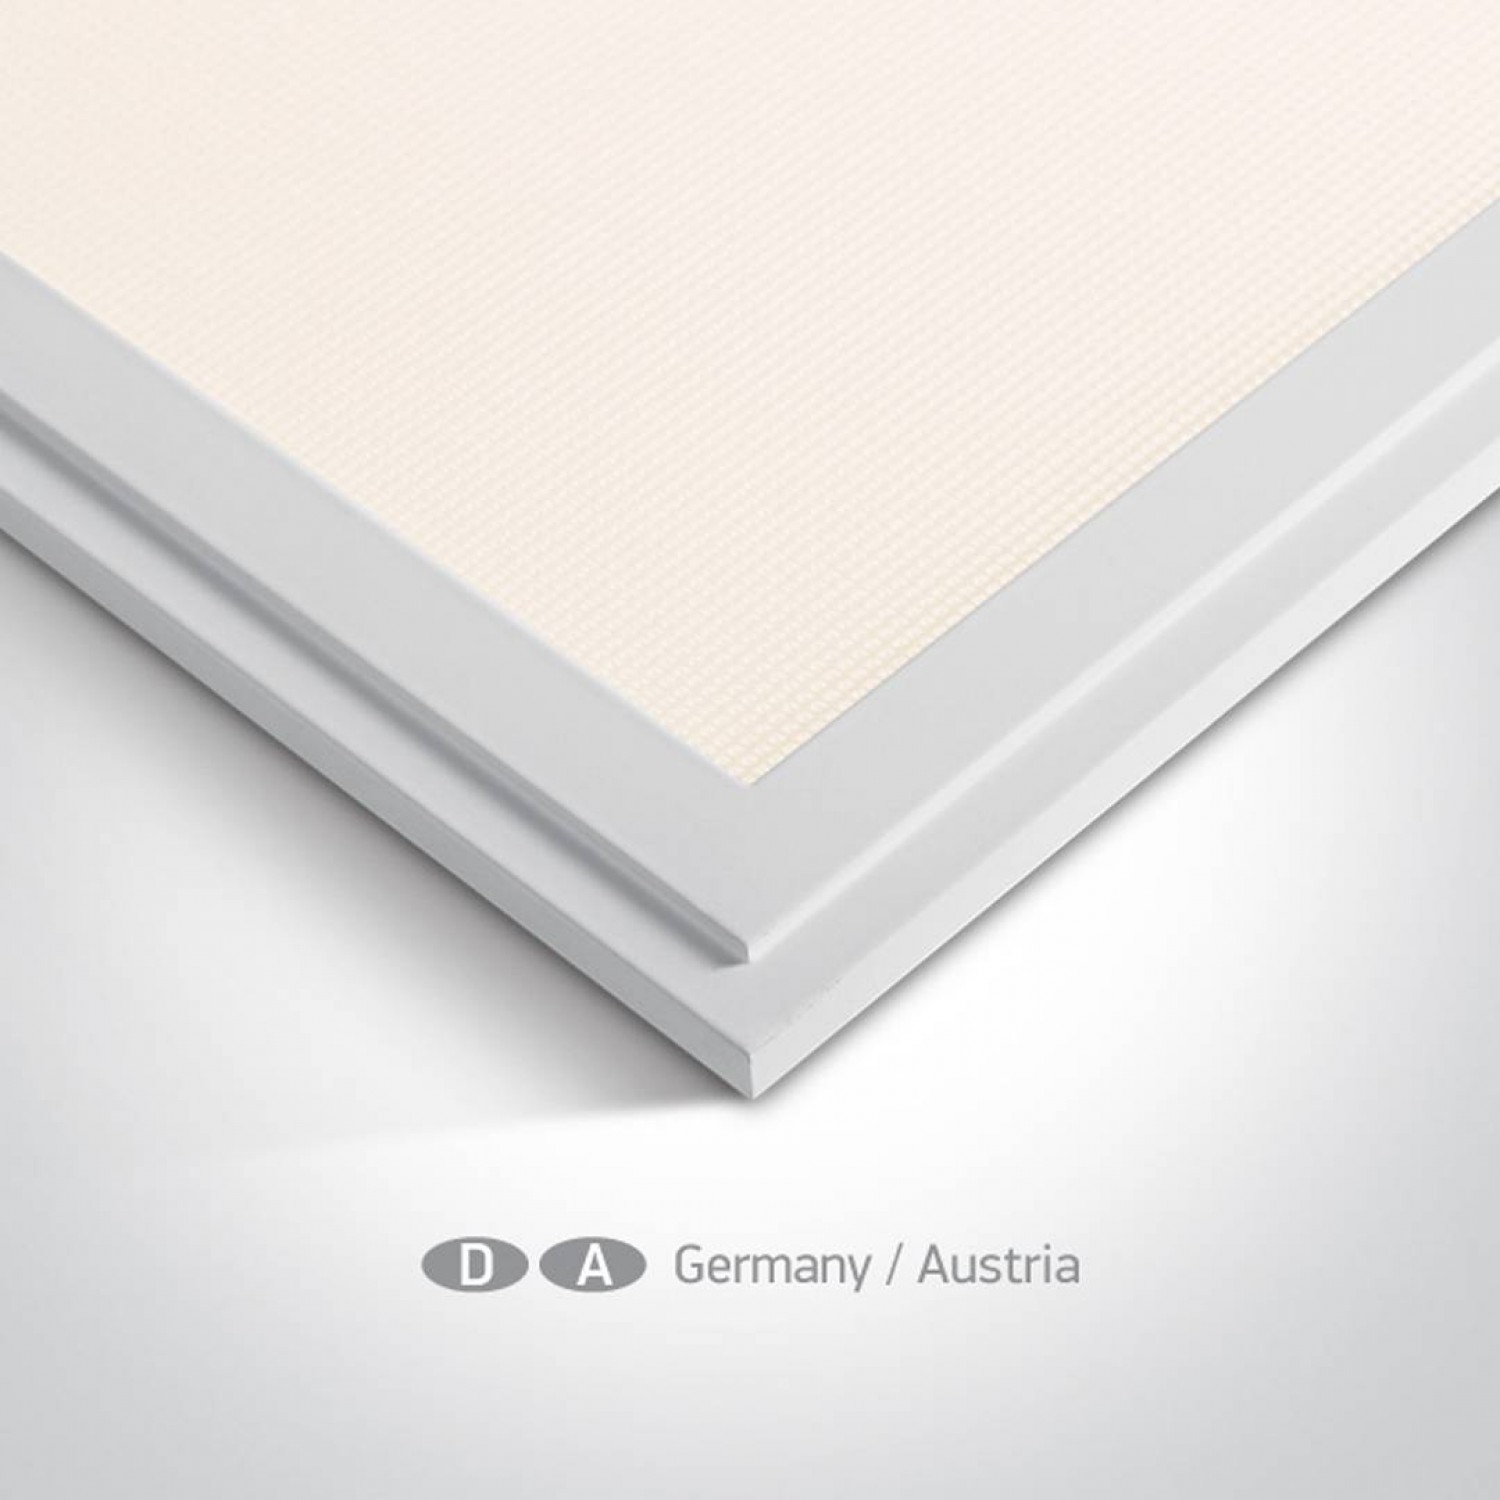 alt_image Армстронг ONE Light Panels For Germany/Austria 50140AU/W/W